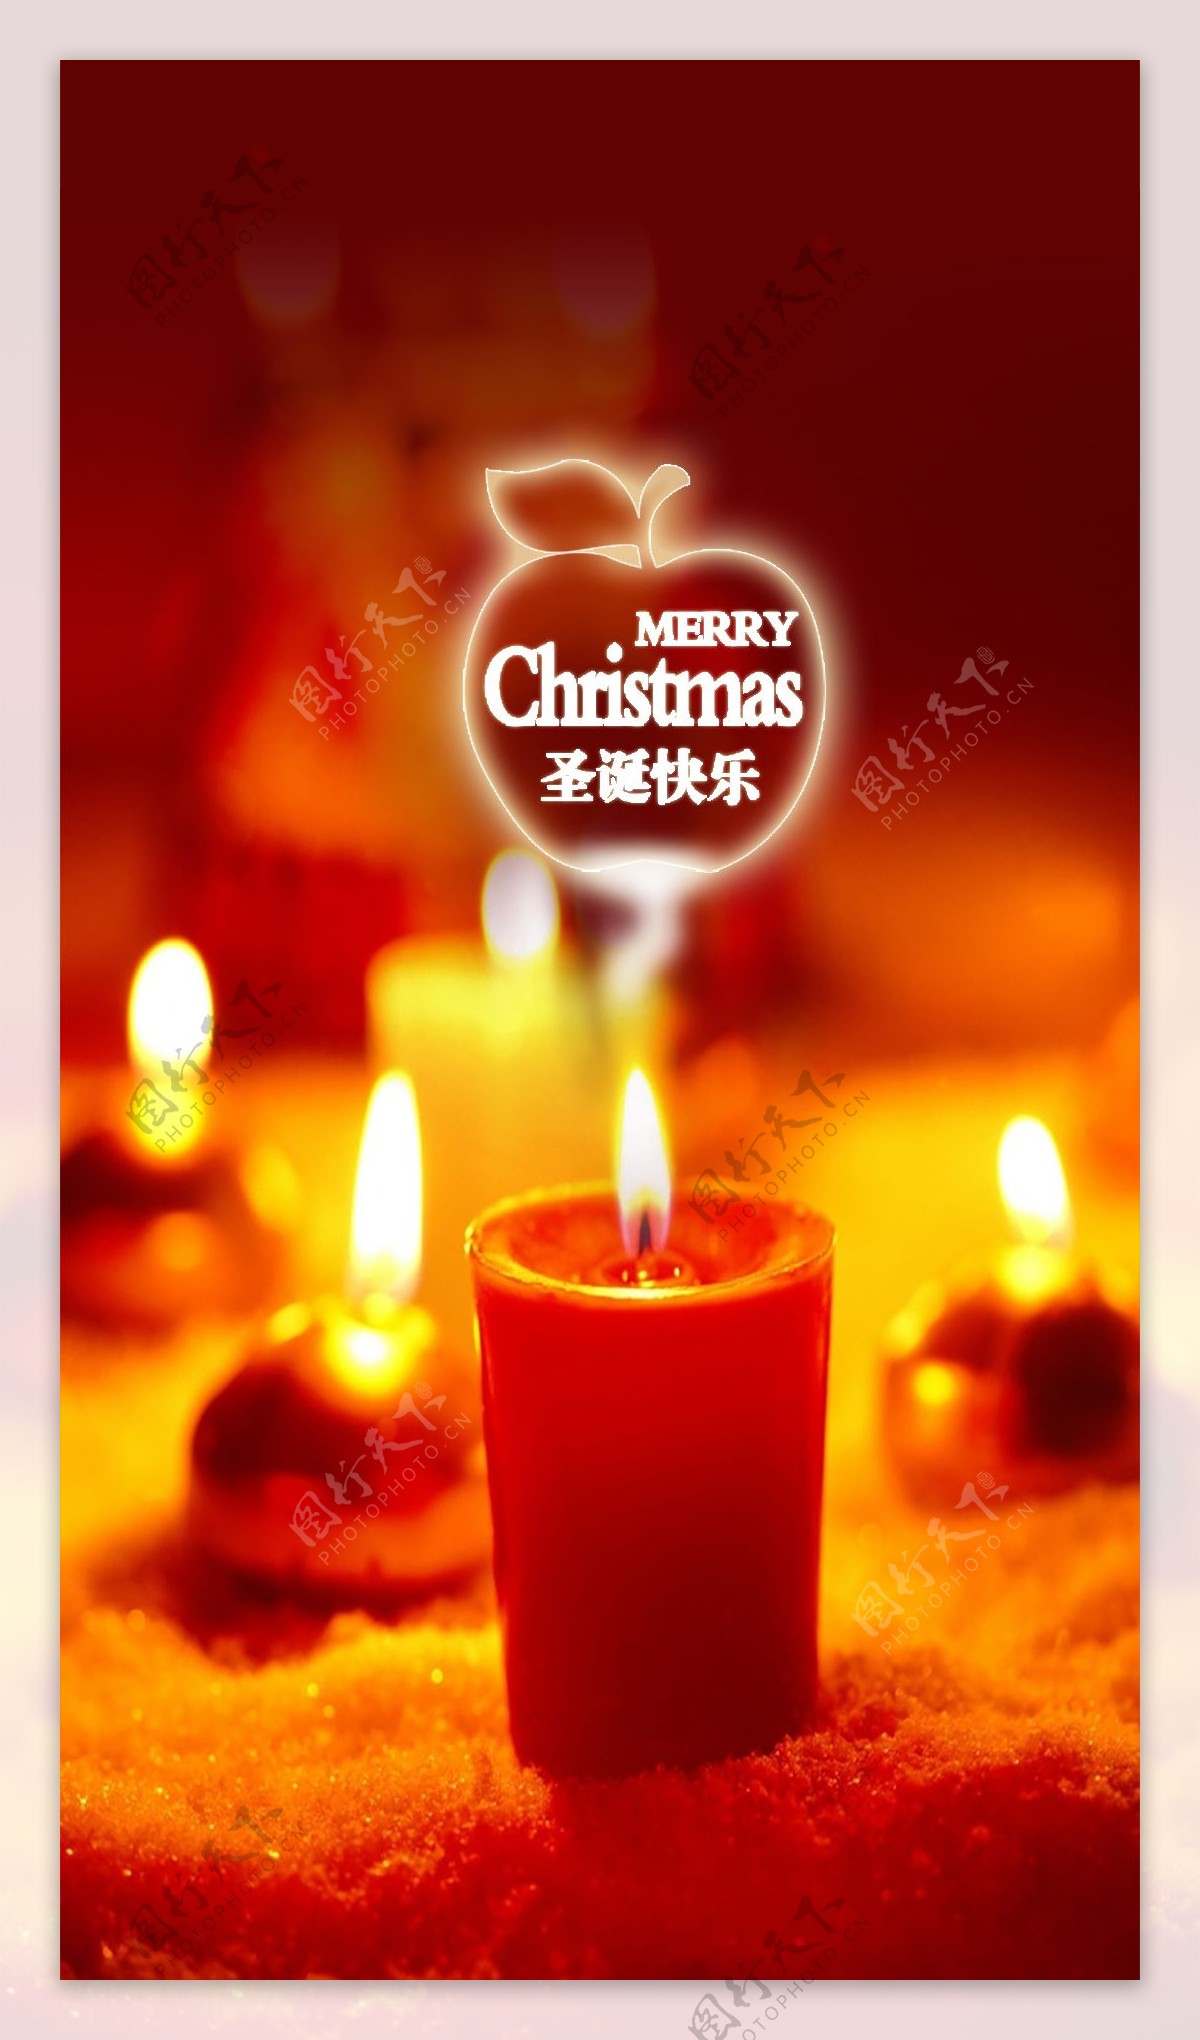 橙色蜡烛圣诞节H5背景素材